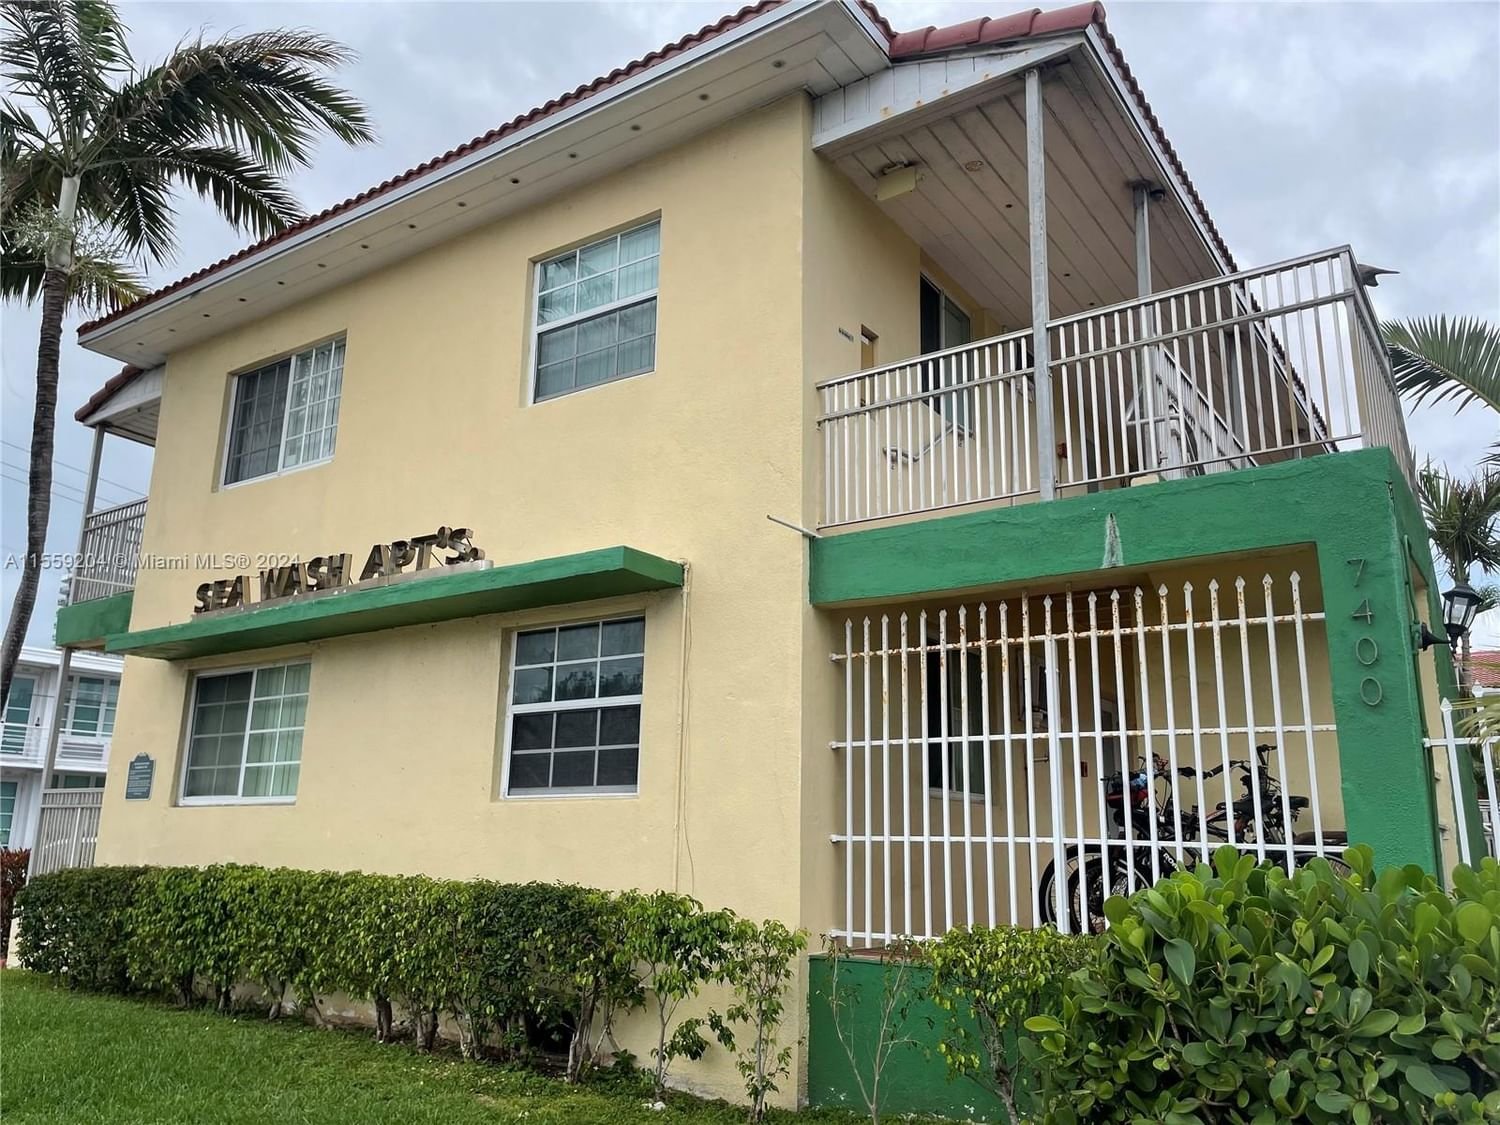 Real estate property located at 7400 Harding Ave #5, Miami-Dade County, SEA WASH CONDO, Miami Beach, FL